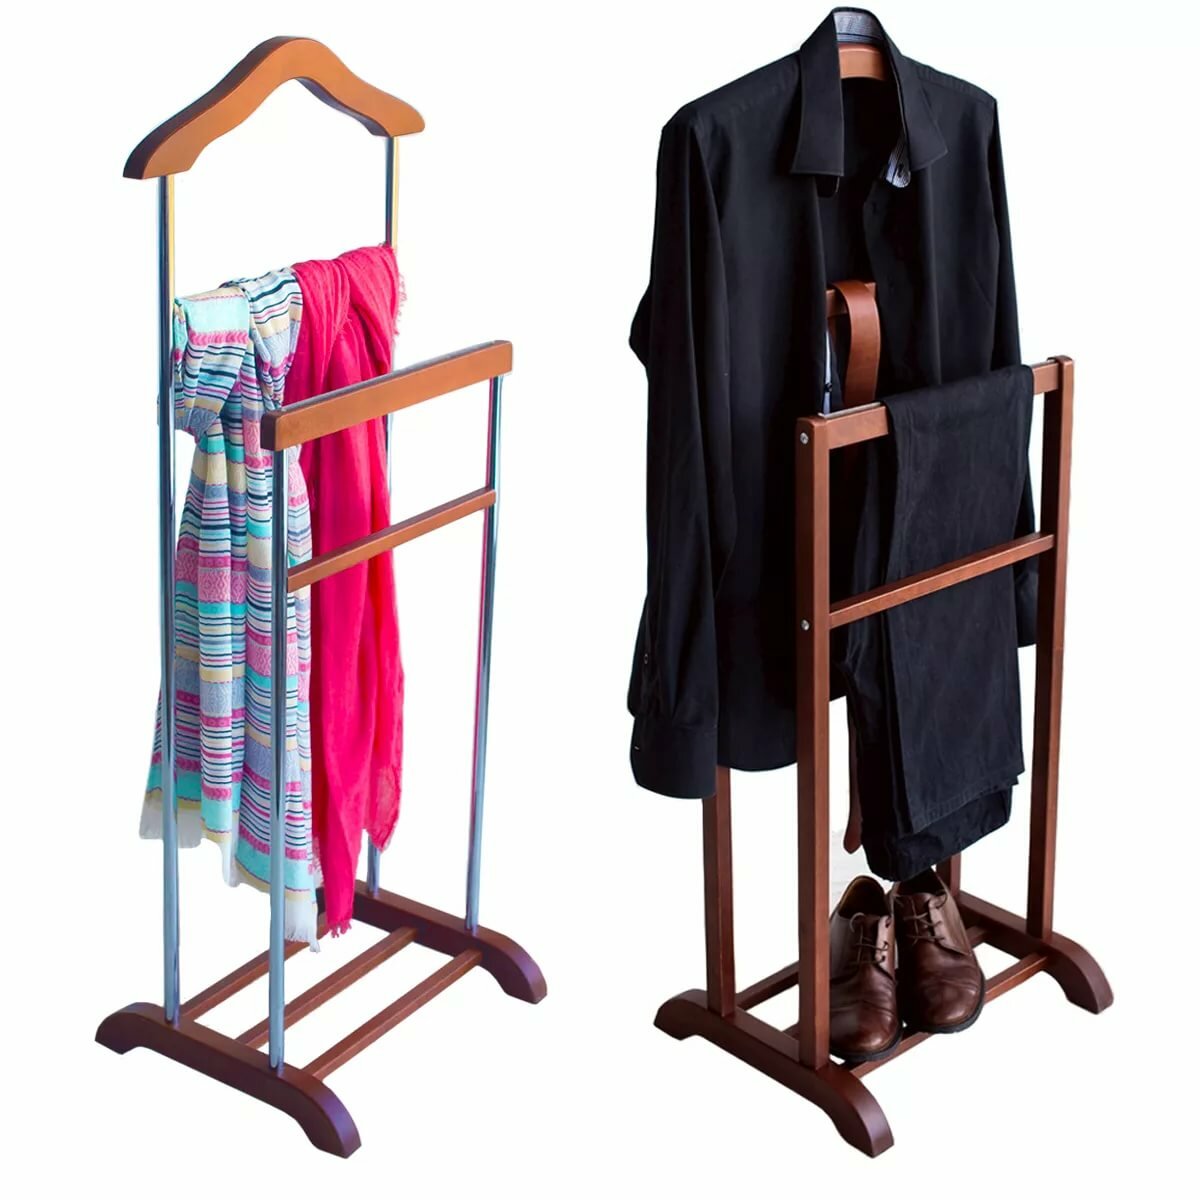 Напольные вешалки (включая стойки) для одежды, костюмов, рубашек, брюк | онлайн-журнал о ремонте и дизайне